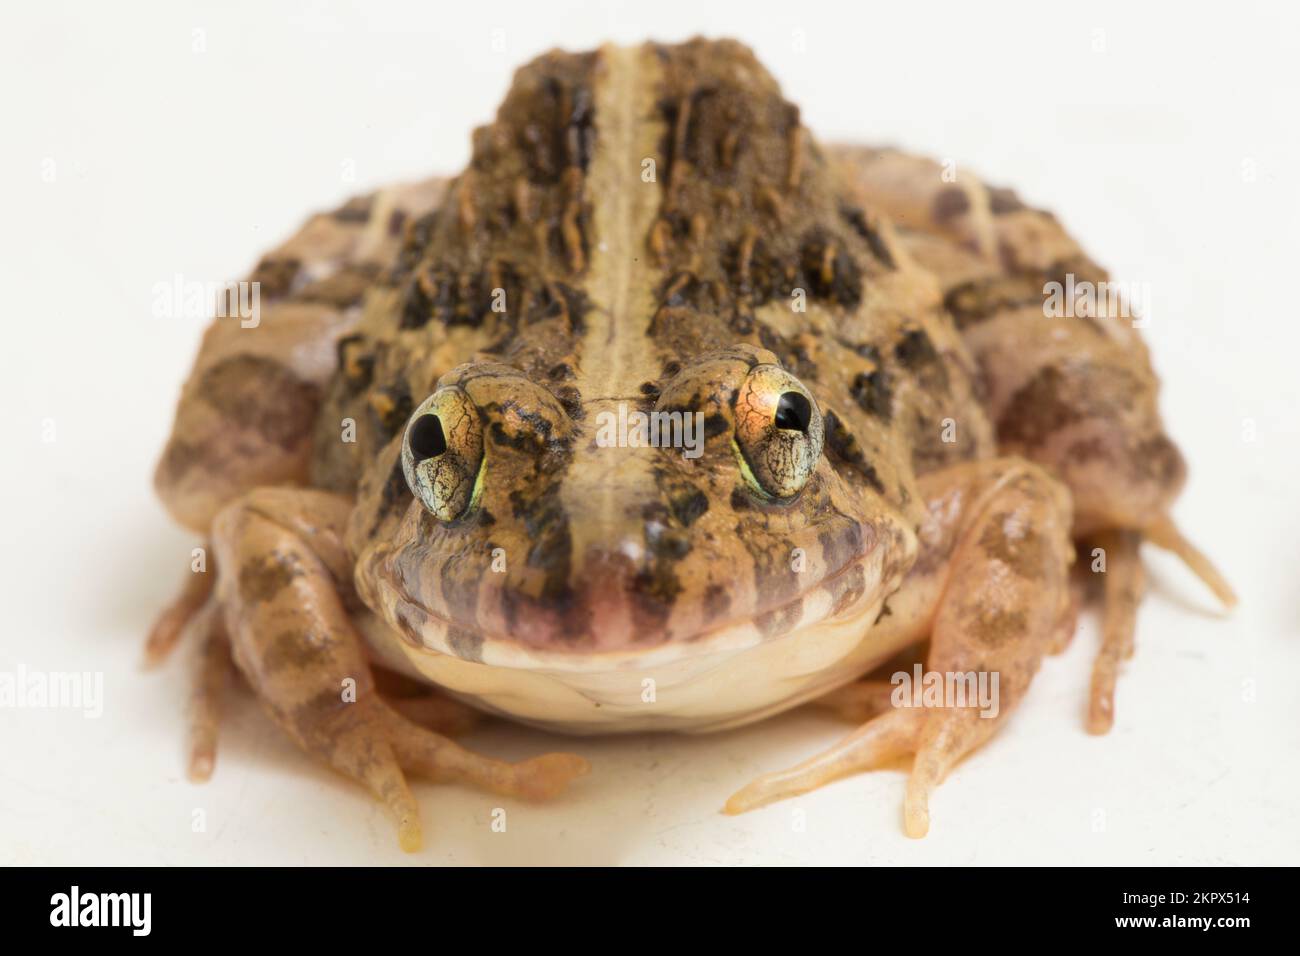 Krabben fressender Frosch oder Mangrovenfrosch Fejervarya cancrivora, isoliert auf weißem Hintergrund Stockfoto